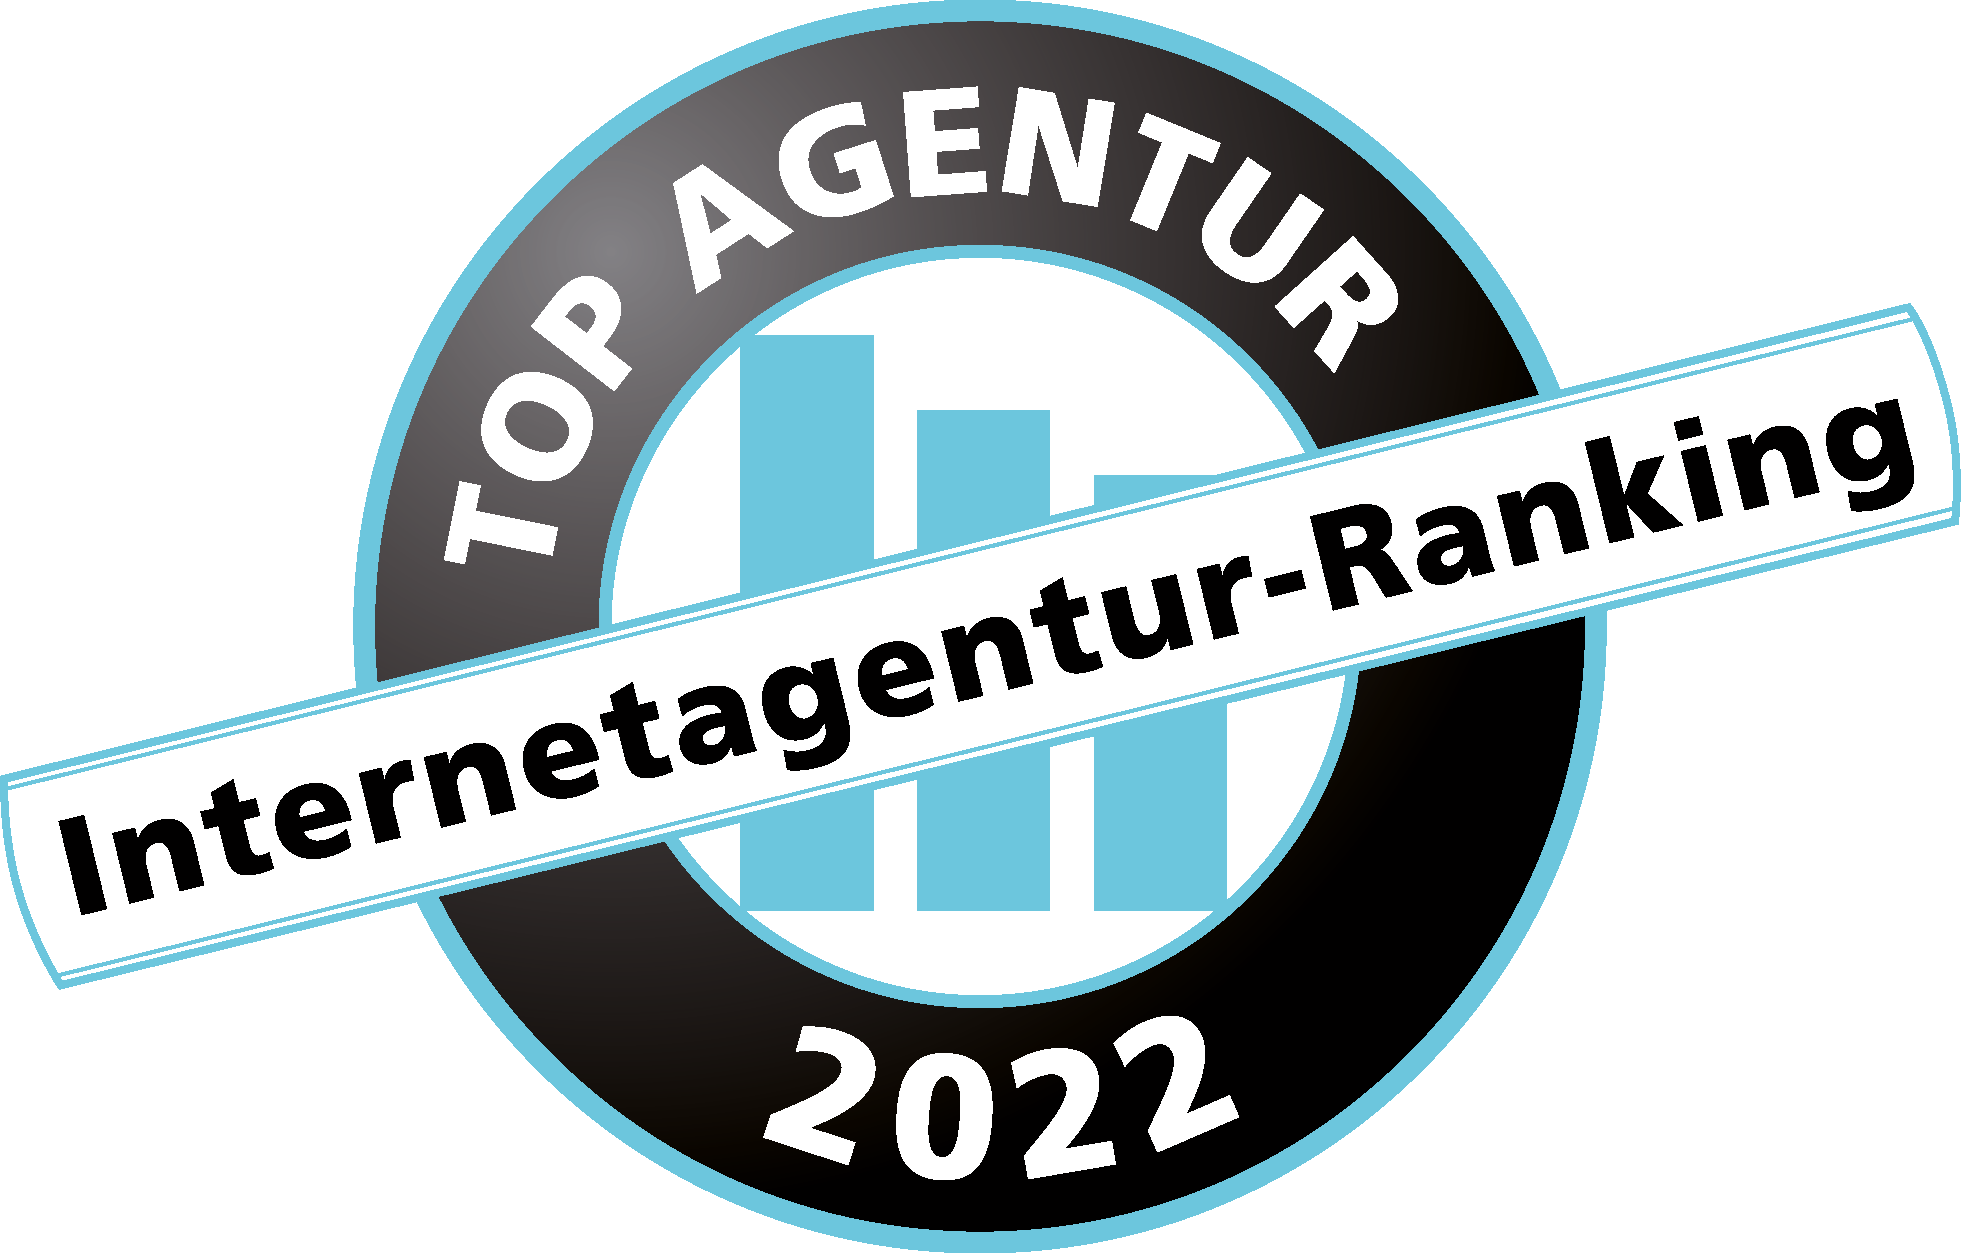 Internetagentur-Ranking_Siegel_2022.png